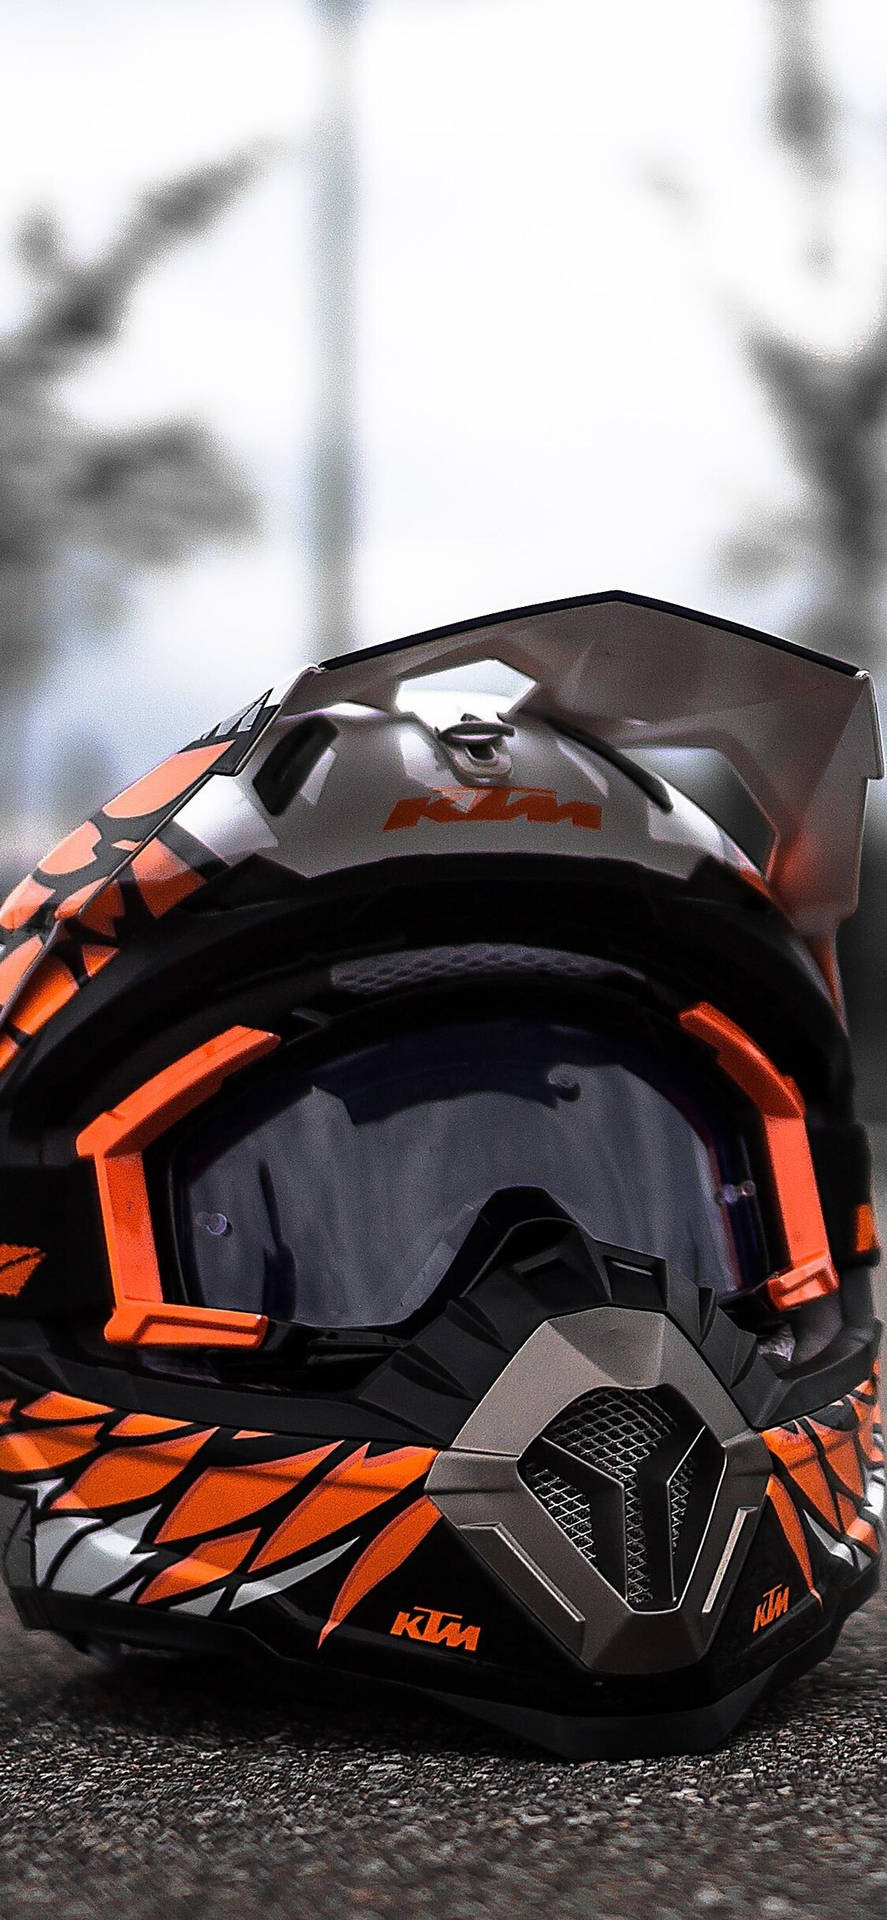 Tapet KTM-hjelm til iPhone Wallpaper